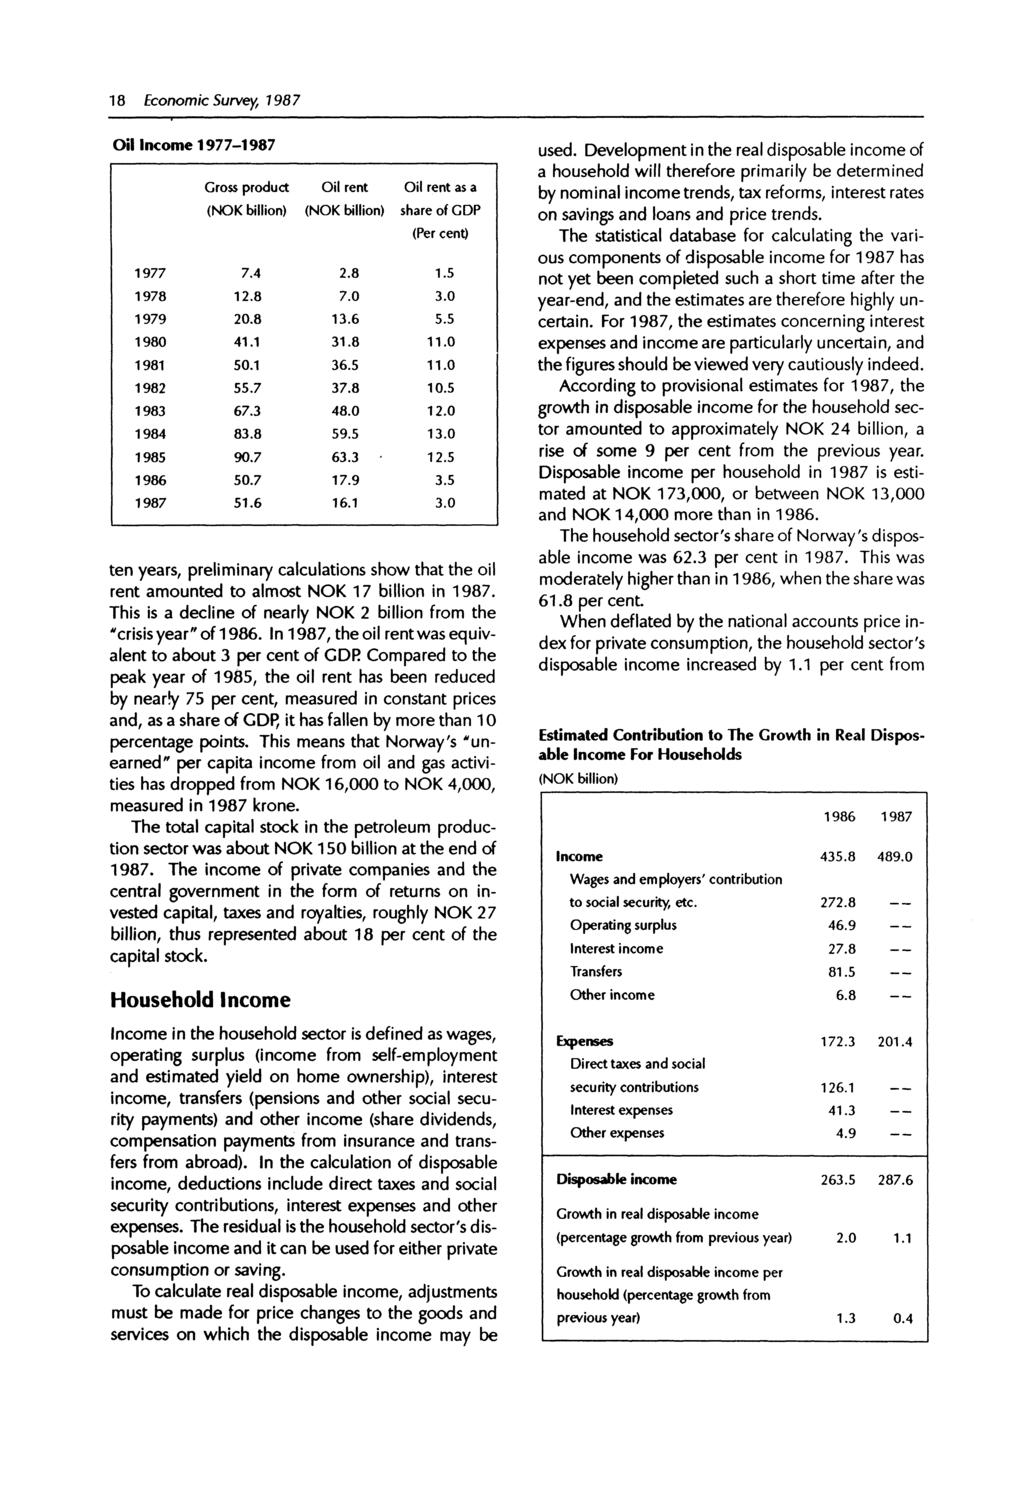 18 Economic Survey, 1987 Oil Income 1977-1987 Gross product (NOK billion) Oil rent (NOK billion) Oil rent as a share of GDP (Per cent) 1977 7.4 2.8 1.5 1978 12.8 7.0 3.0 1979 20.8 13.6 5.5 1980 41.